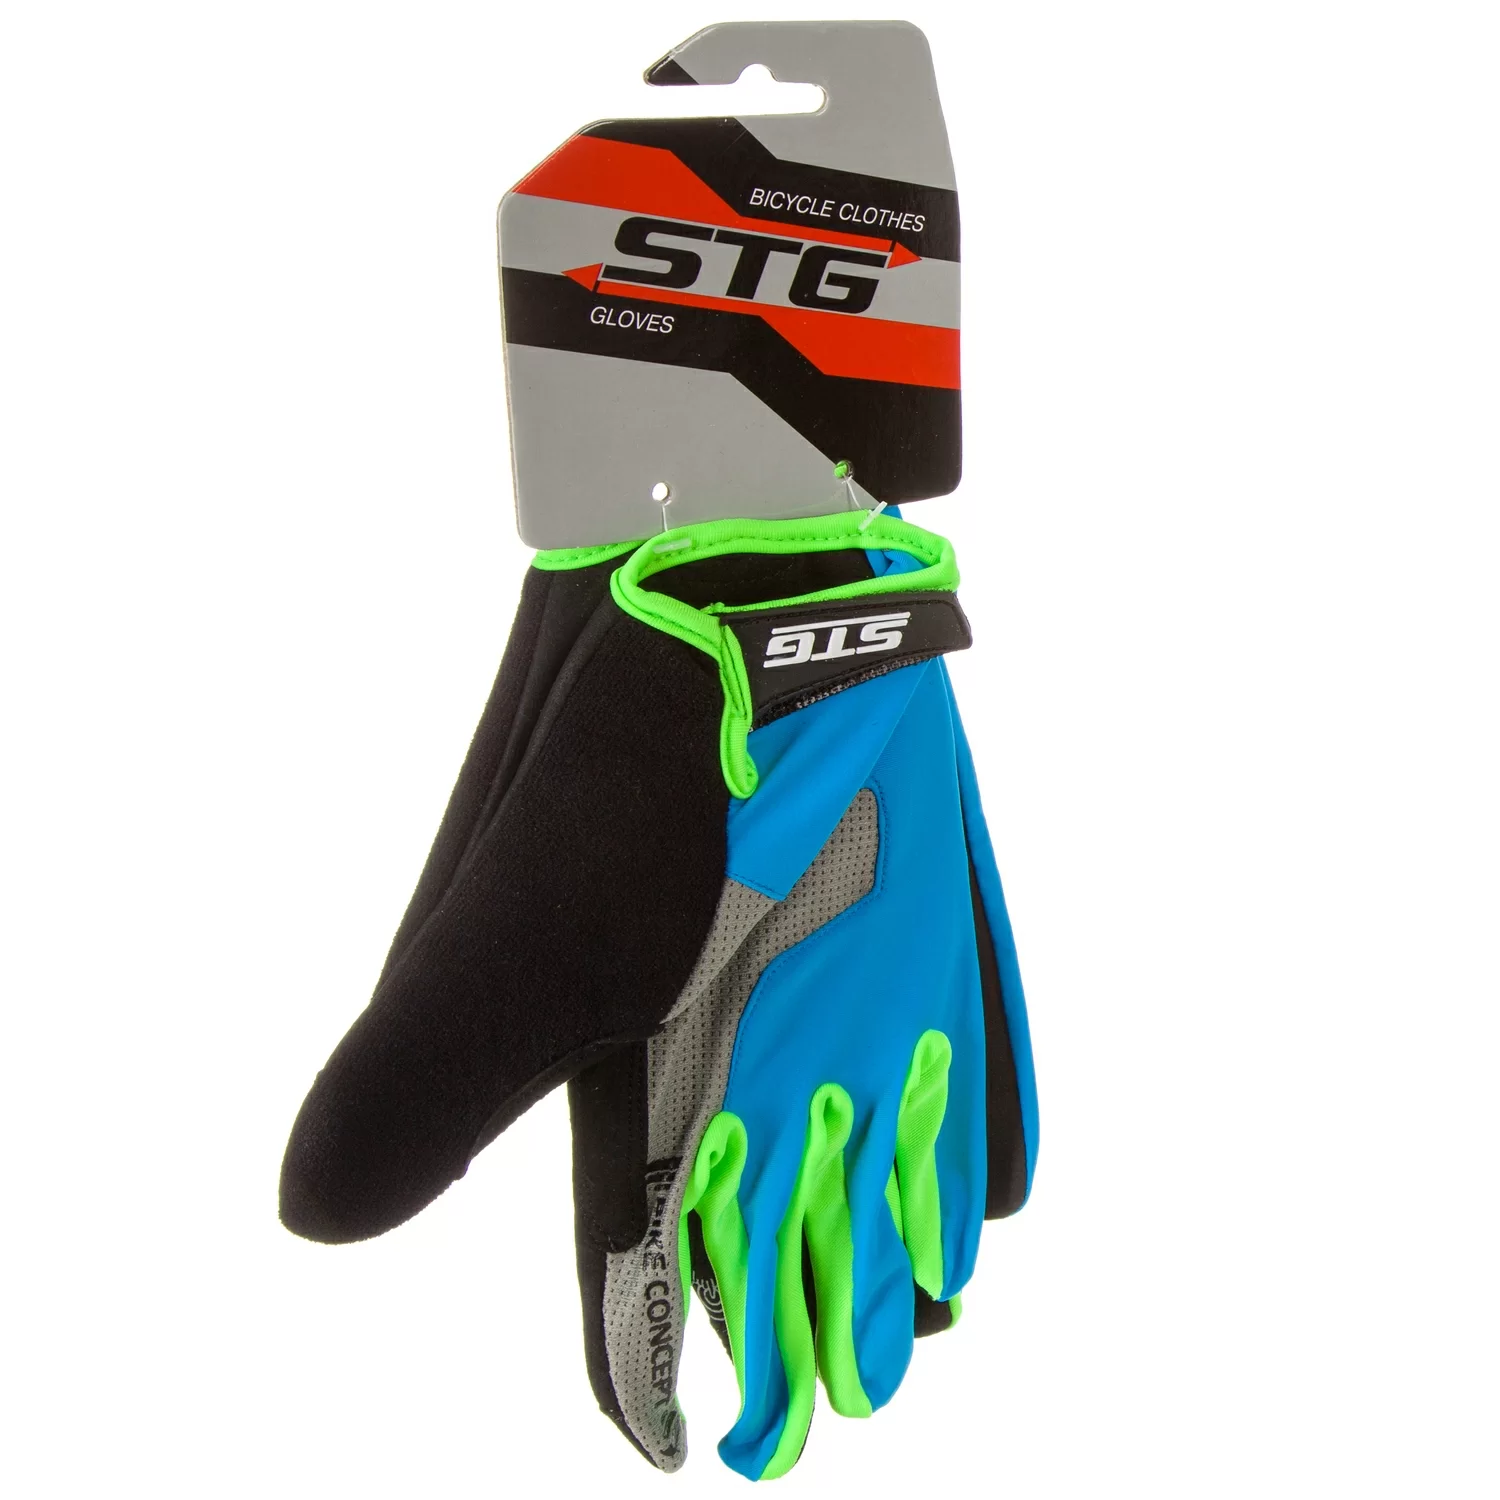 Реальное фото Перчатки STG AL-05-1871 с длинными пальцами синие/серые/черные/зеленые Х98254 от магазина СпортЕВ